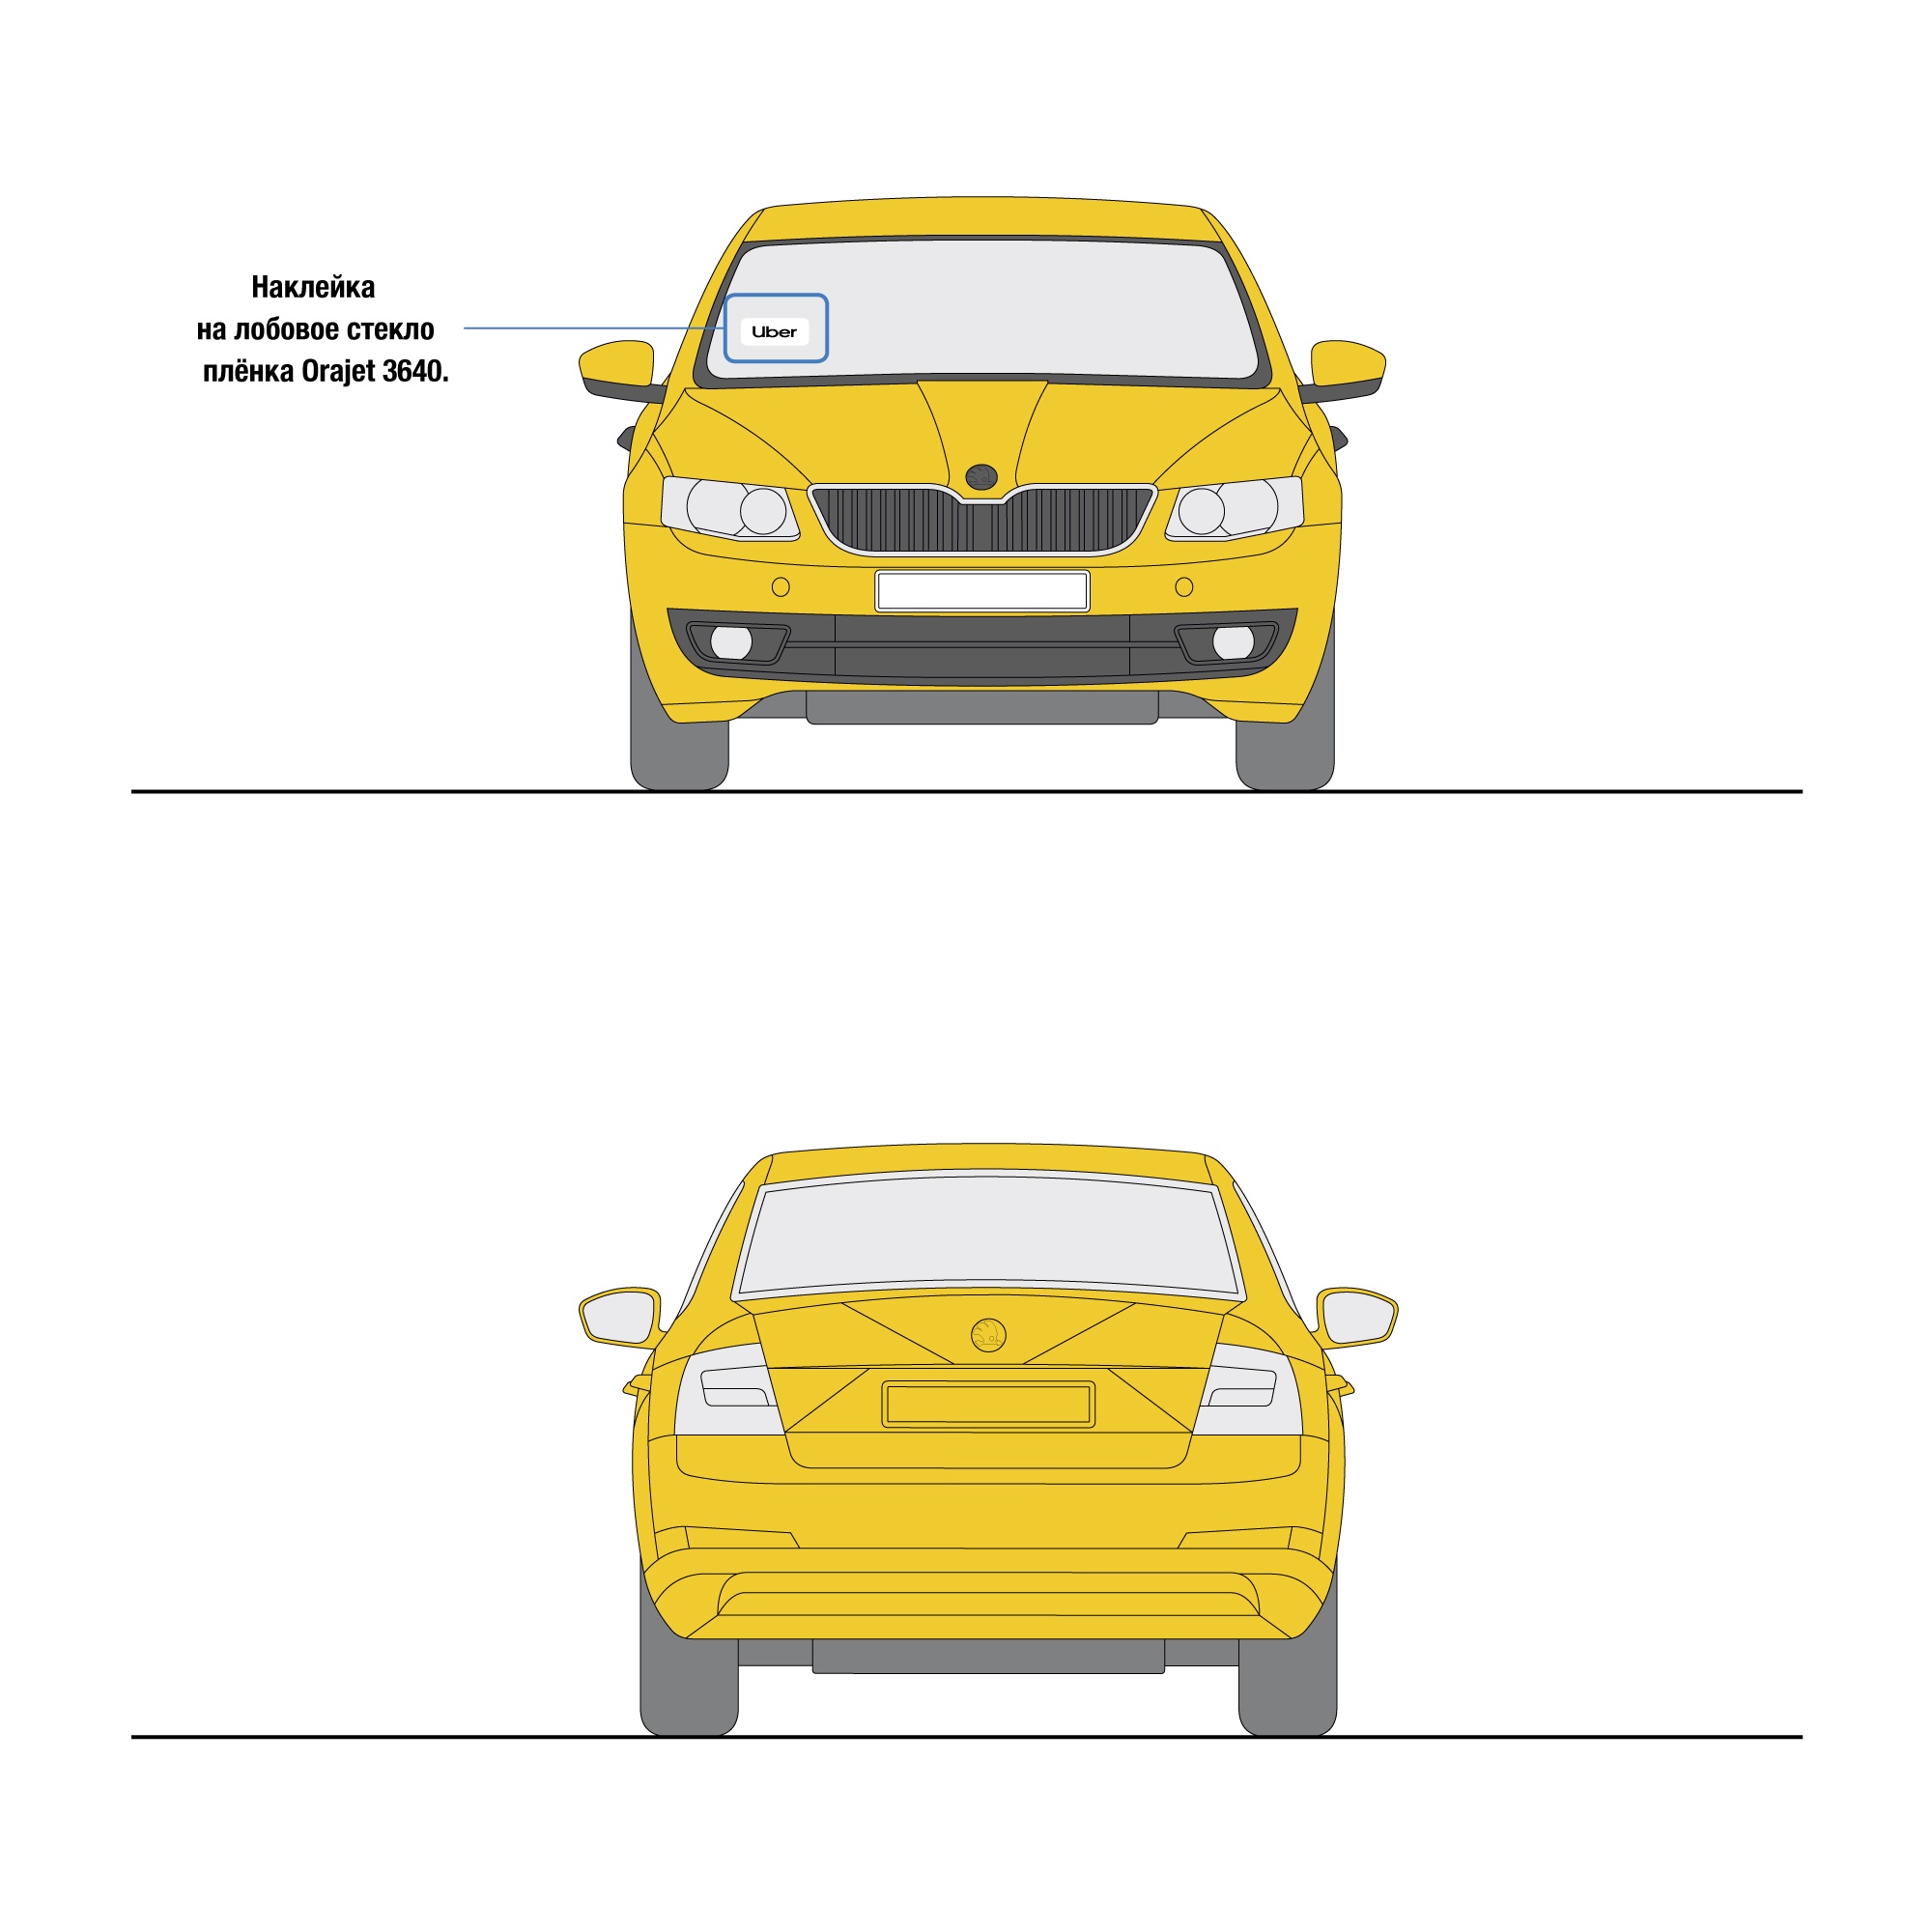 Наклейки Uber для желтых автомобилей - 2